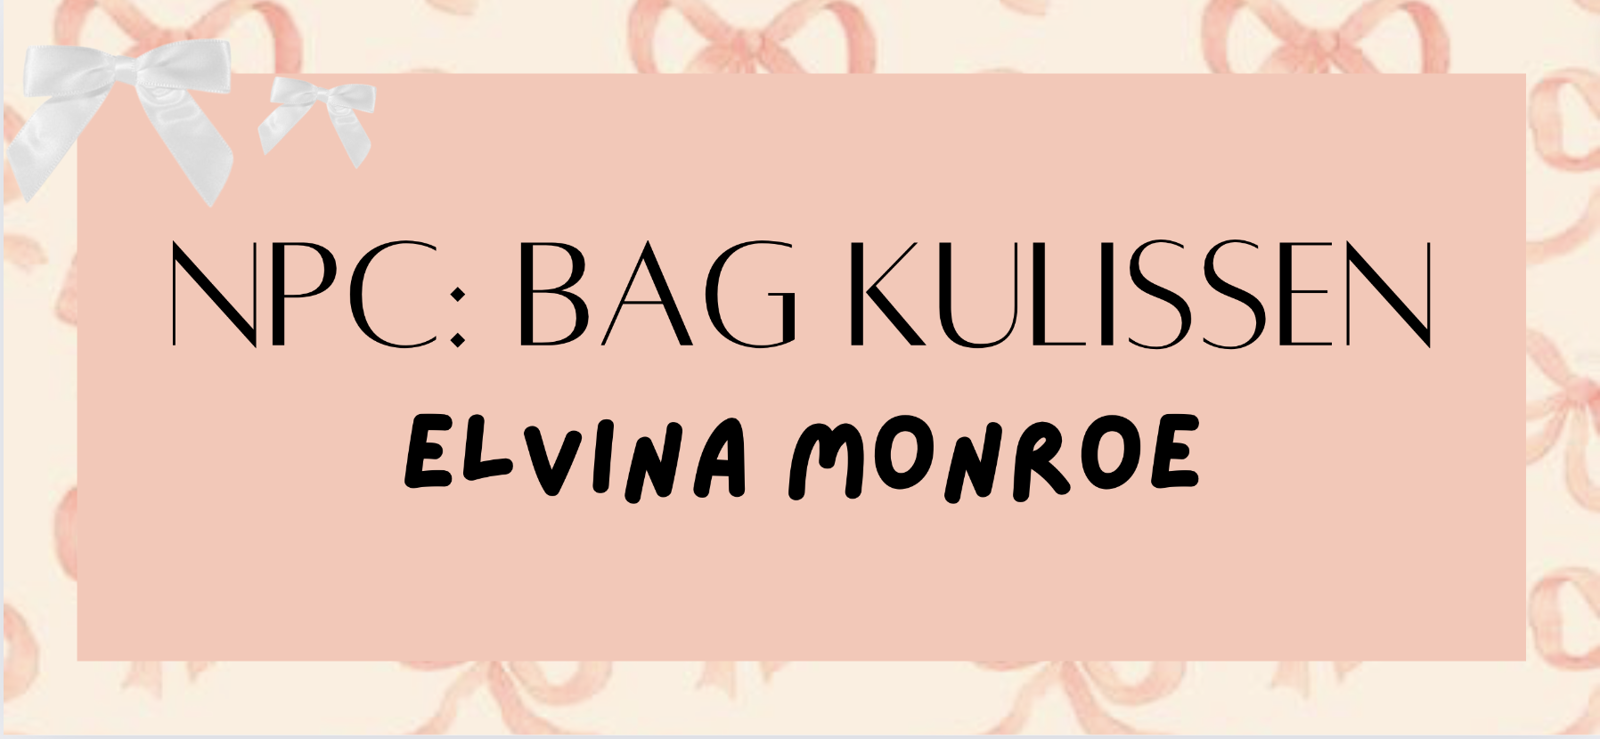 NPC: Bag kulissen - Elvina Monroe